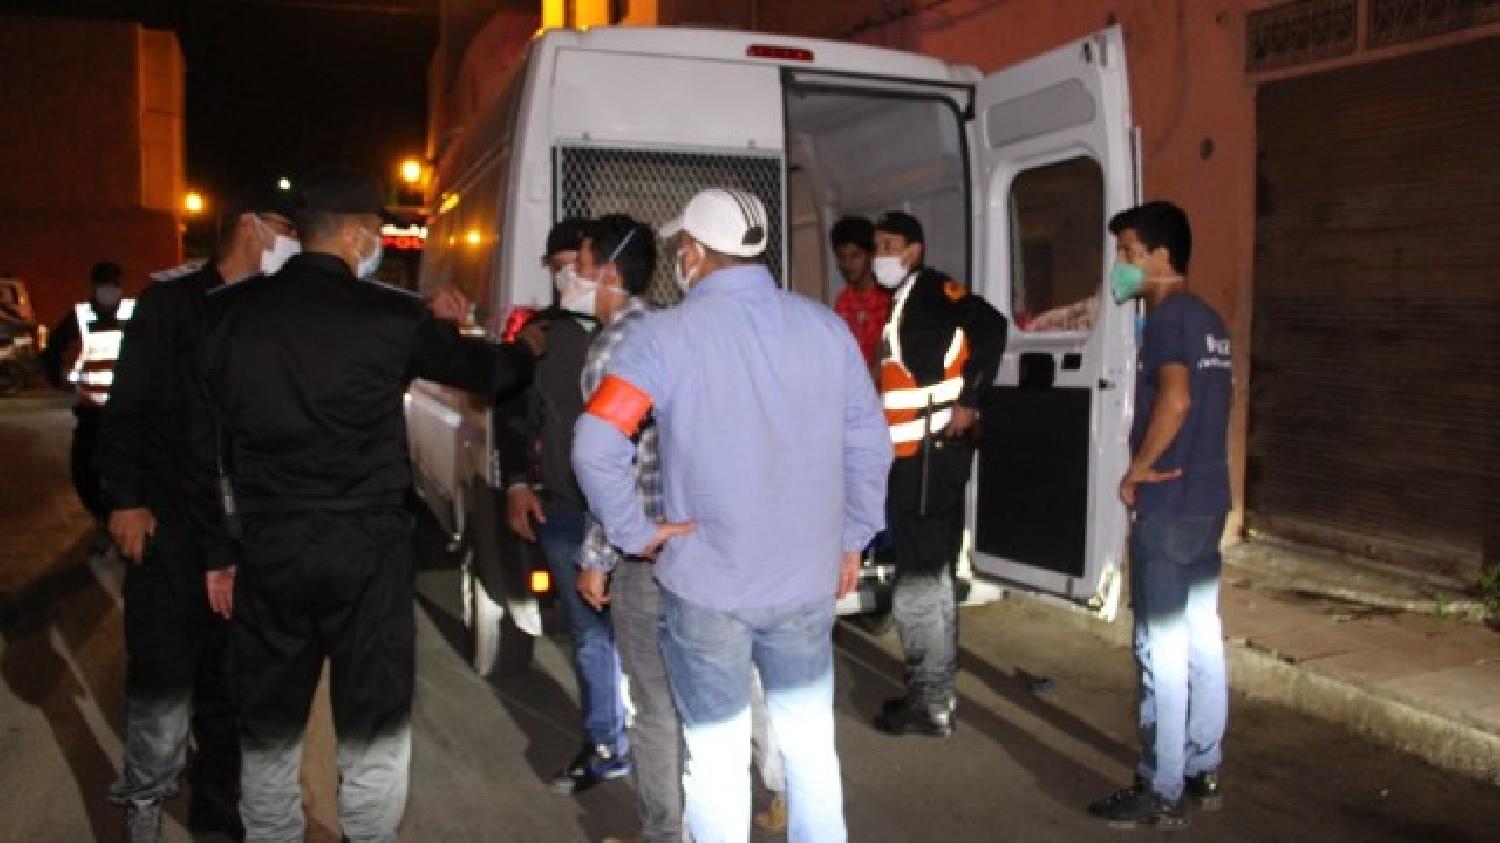 الفرقة الخامسة للشرطة القضائية تواصل حملتها الأمنية بالمدينة العتيقة لمراكش